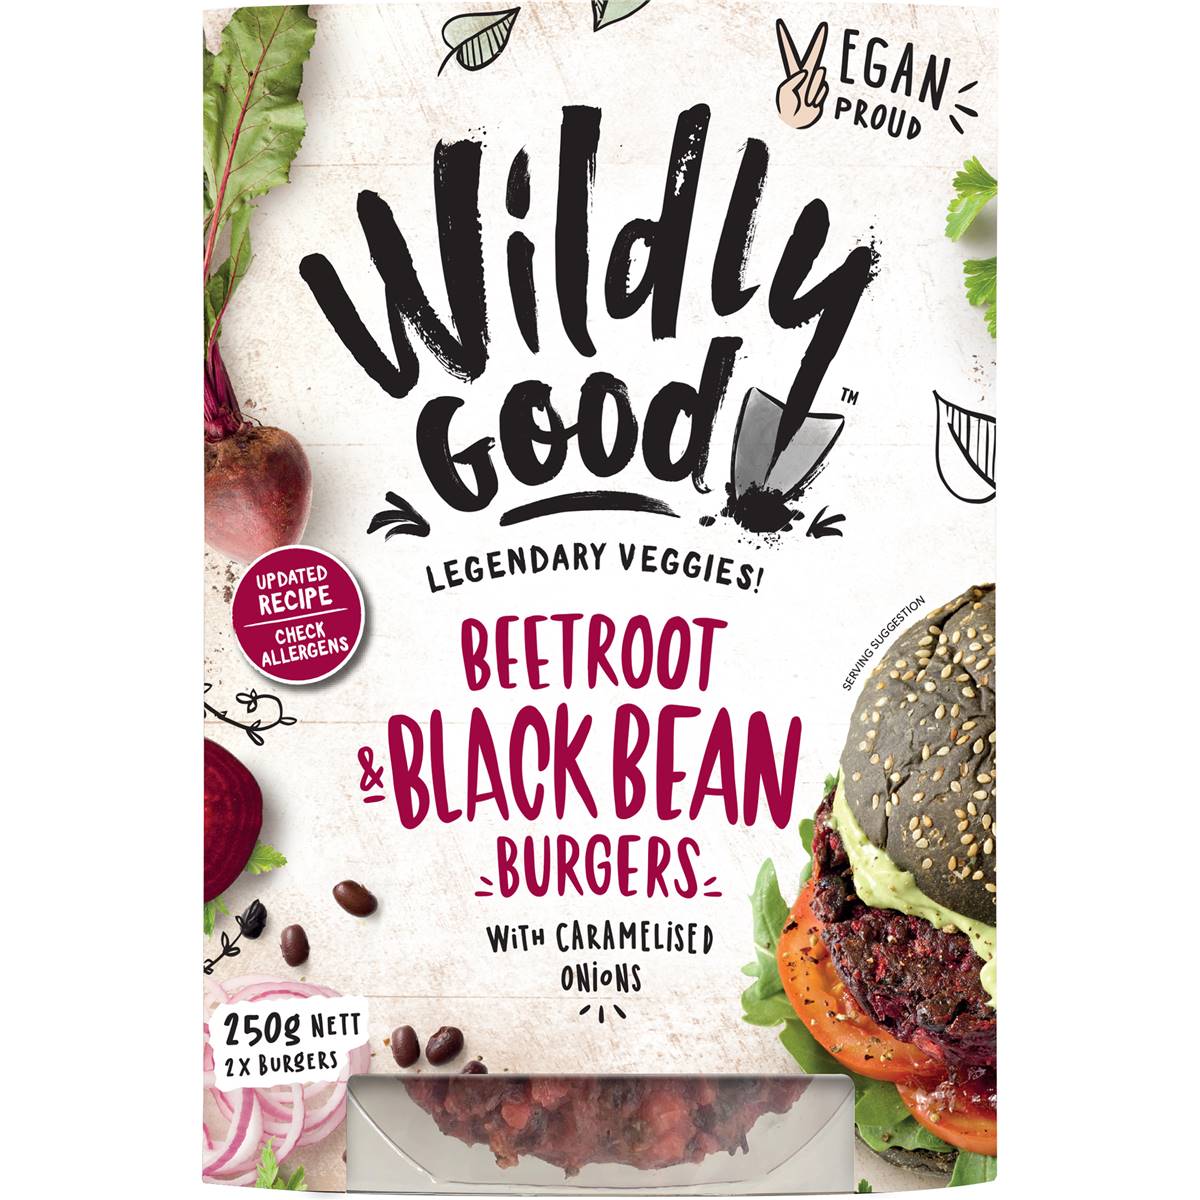 Calories in Wildly Good Beetroot & Black Bean Burgers?